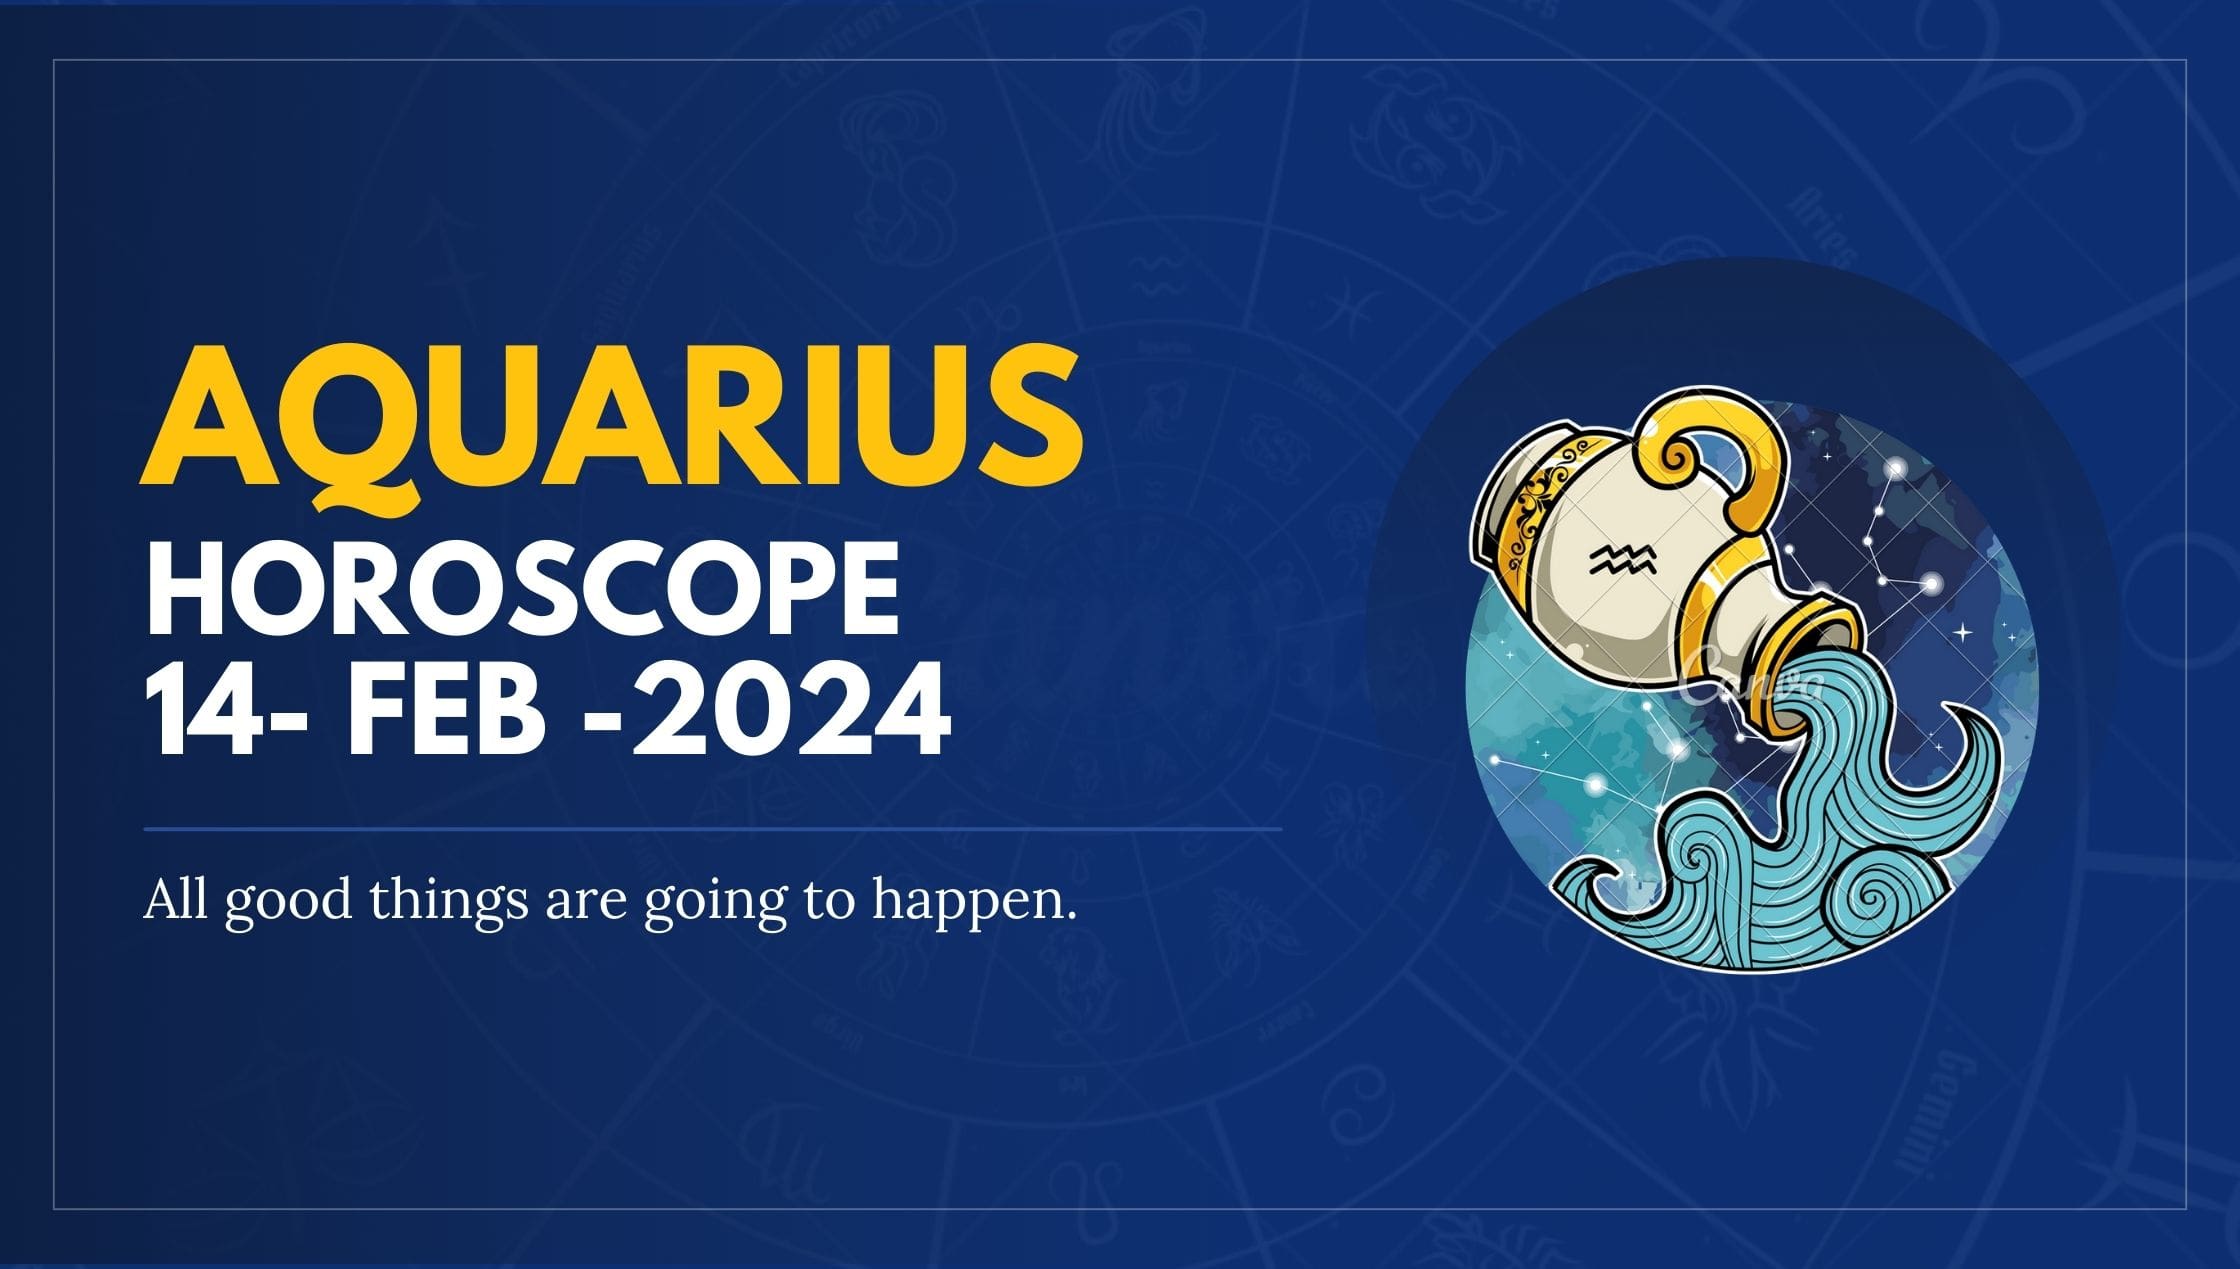 Aquarius Horoscope 14- FEB -2024-min